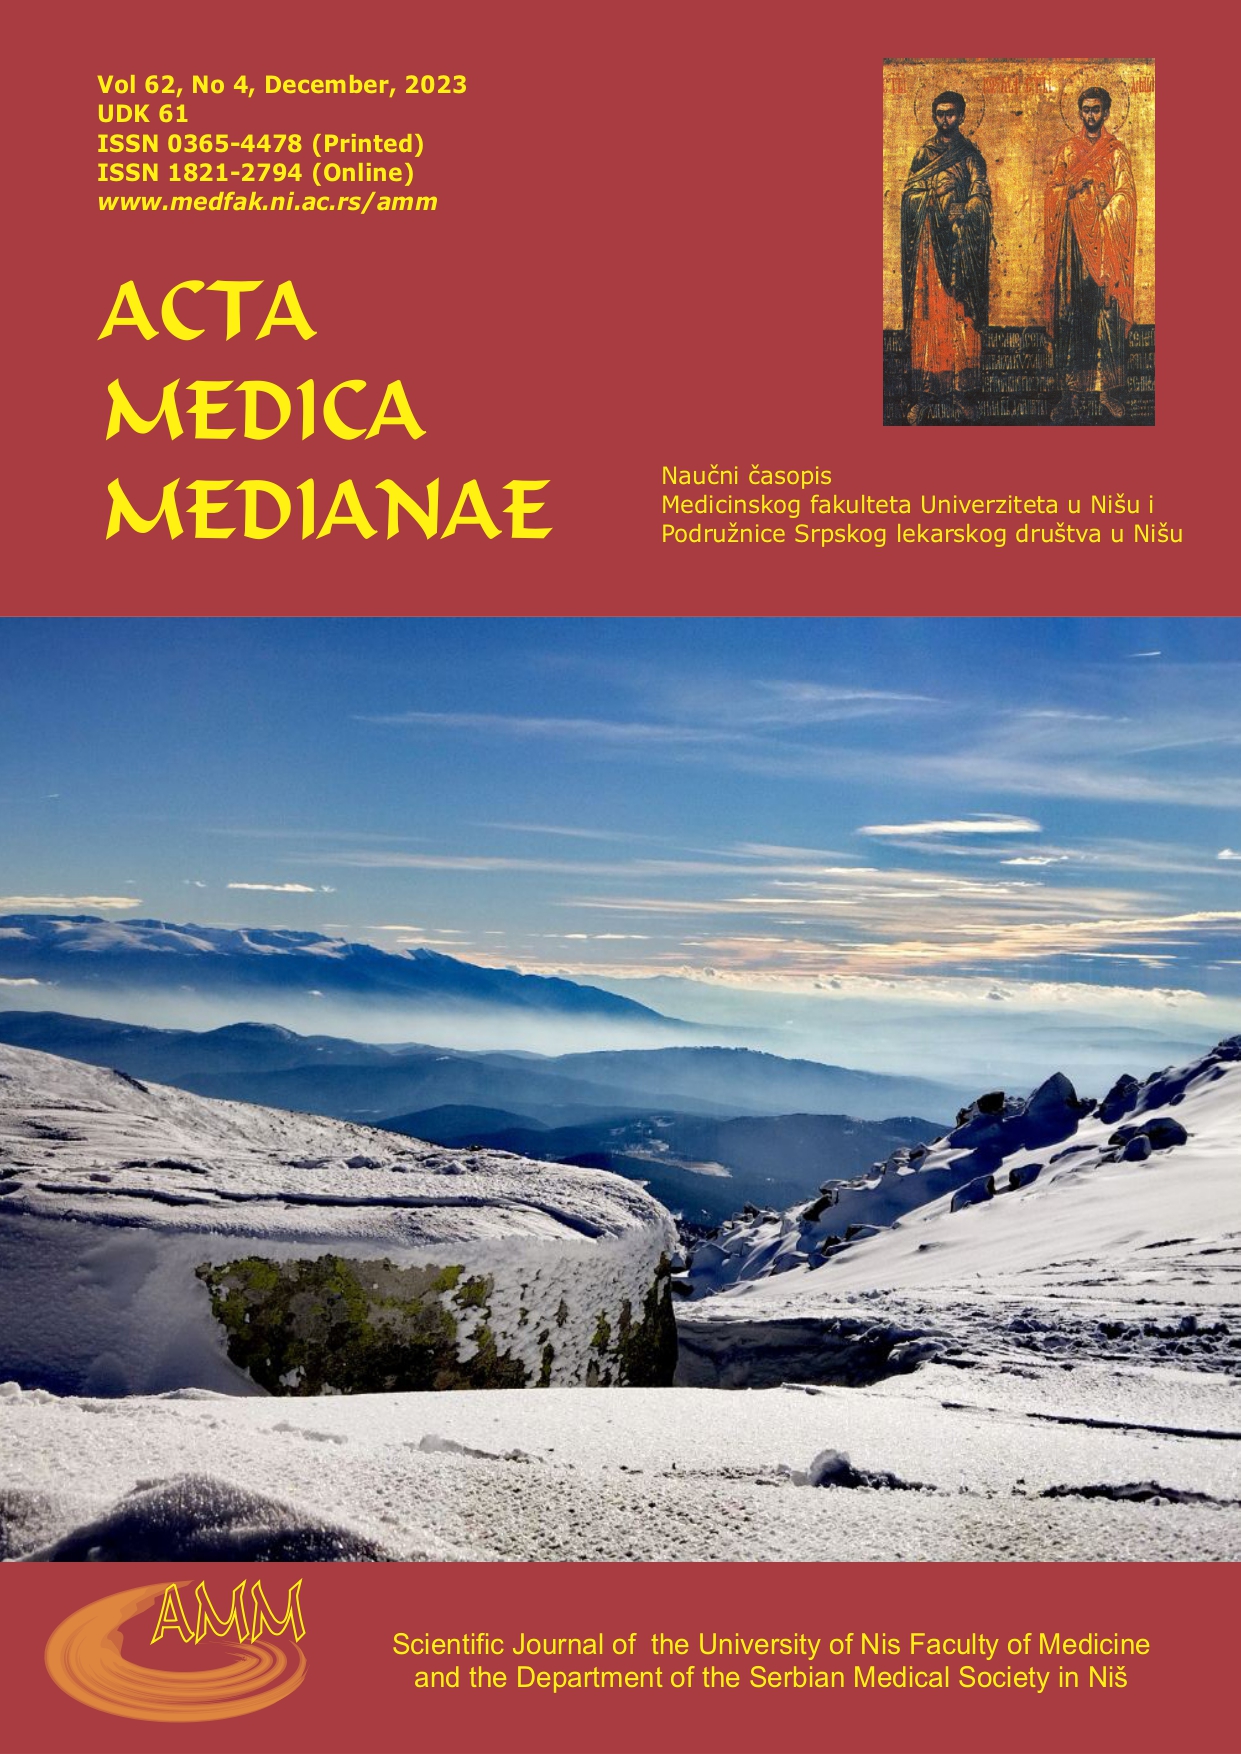 Naslovnica časopisa Acta medica Medianae, Vol 62, No. 4, December 2023